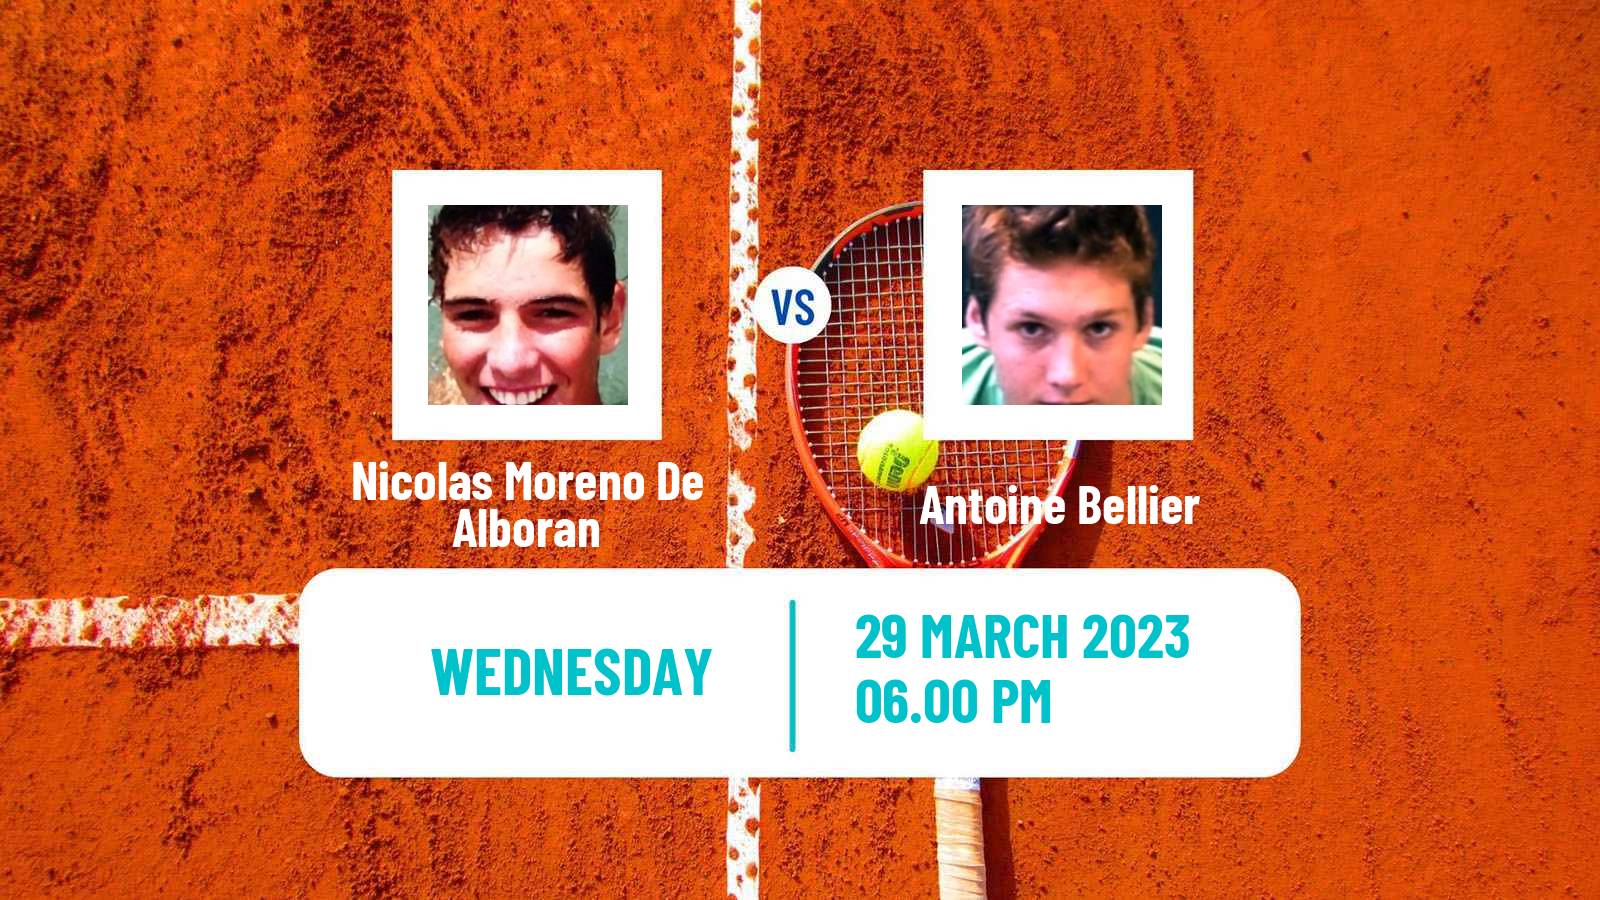 Tennis ATP Challenger Nicolas Moreno De Alboran - Antoine Bellier